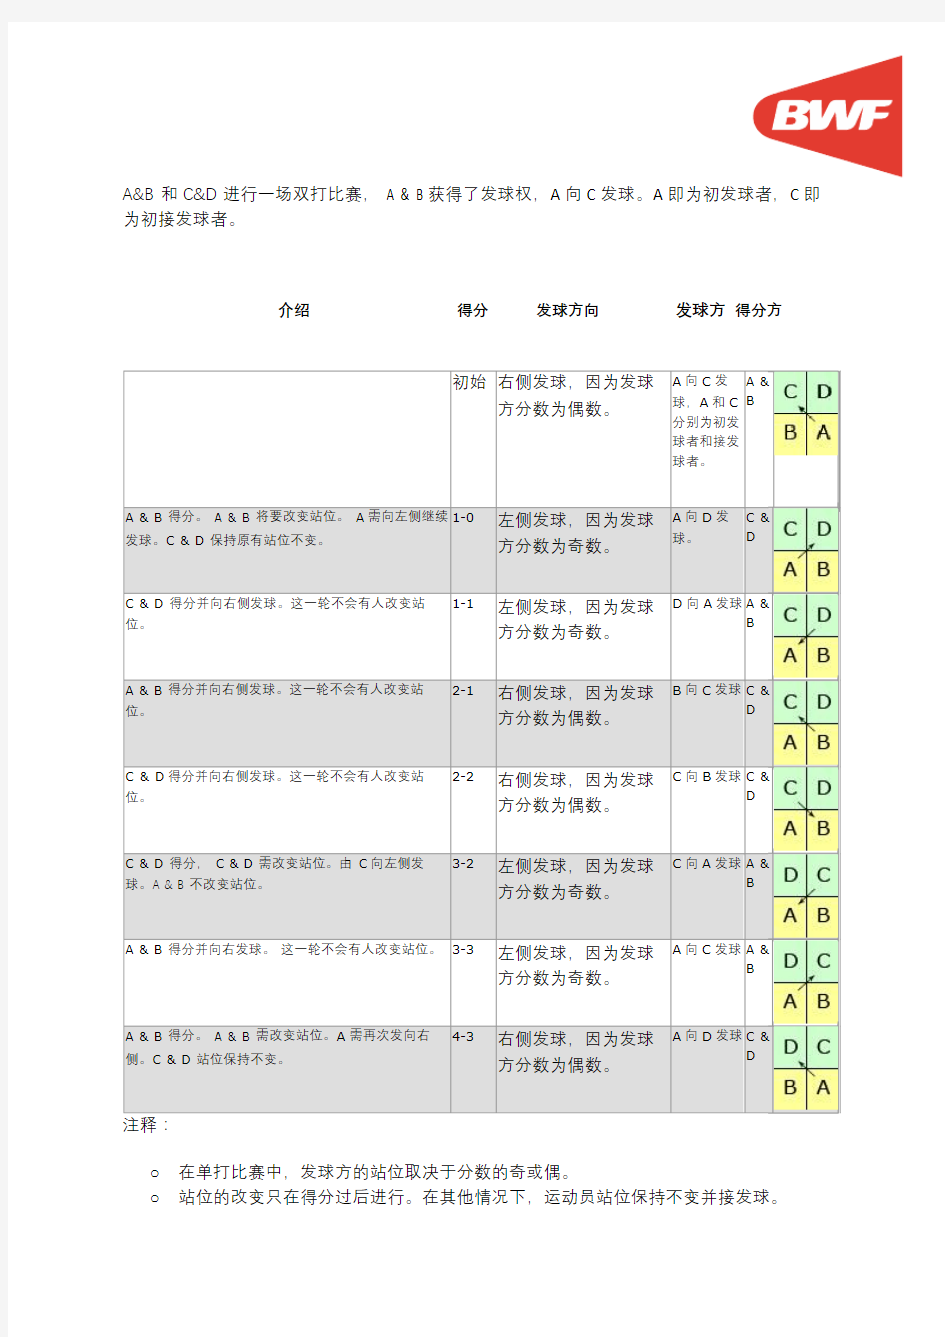 羽毛球基本规则2015简体中文版